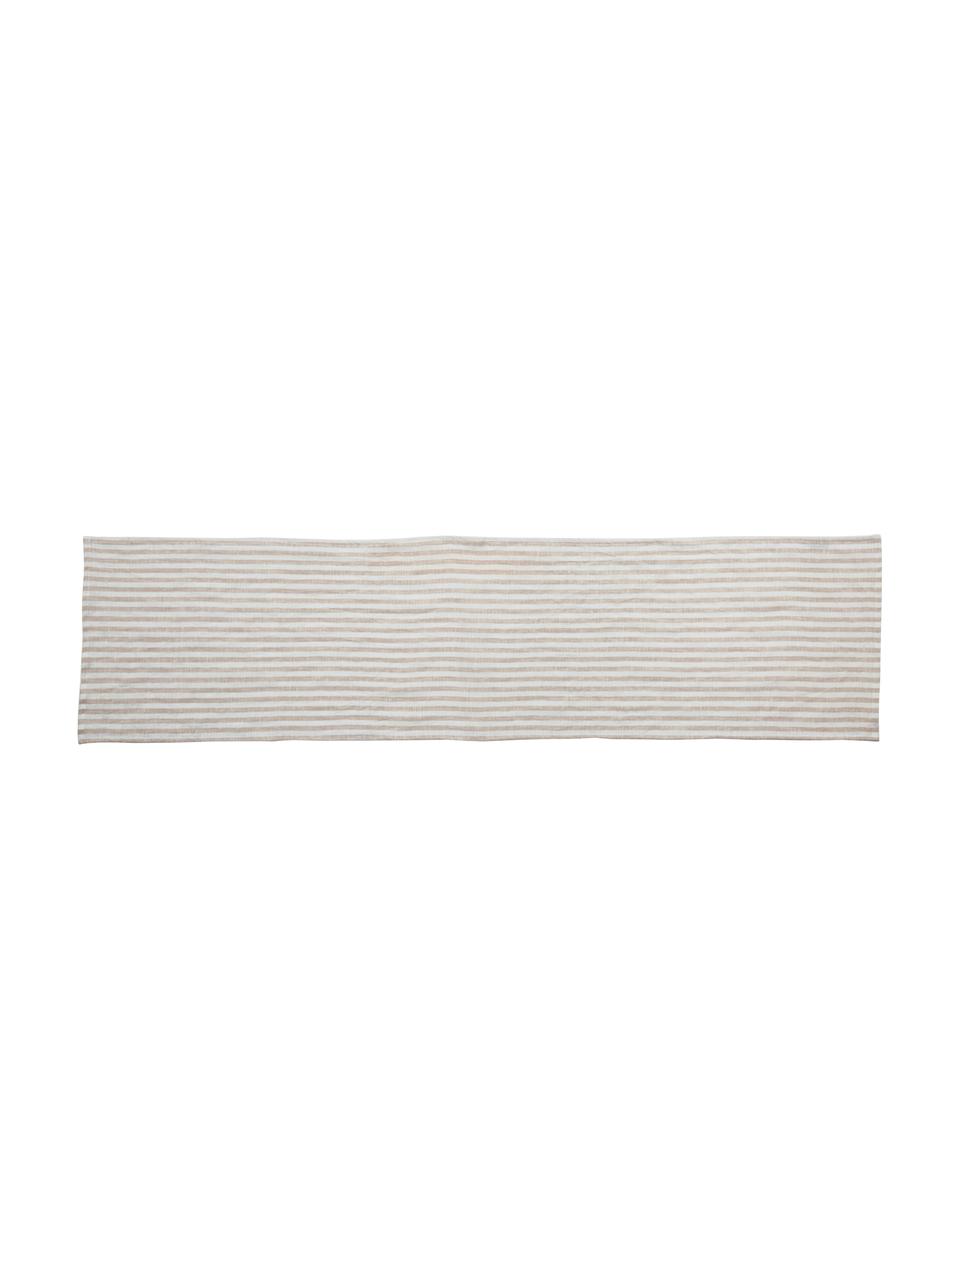 Leinen-Tischläufer Solami, Leinen, Beige, Weiß, 40 x 150 cm